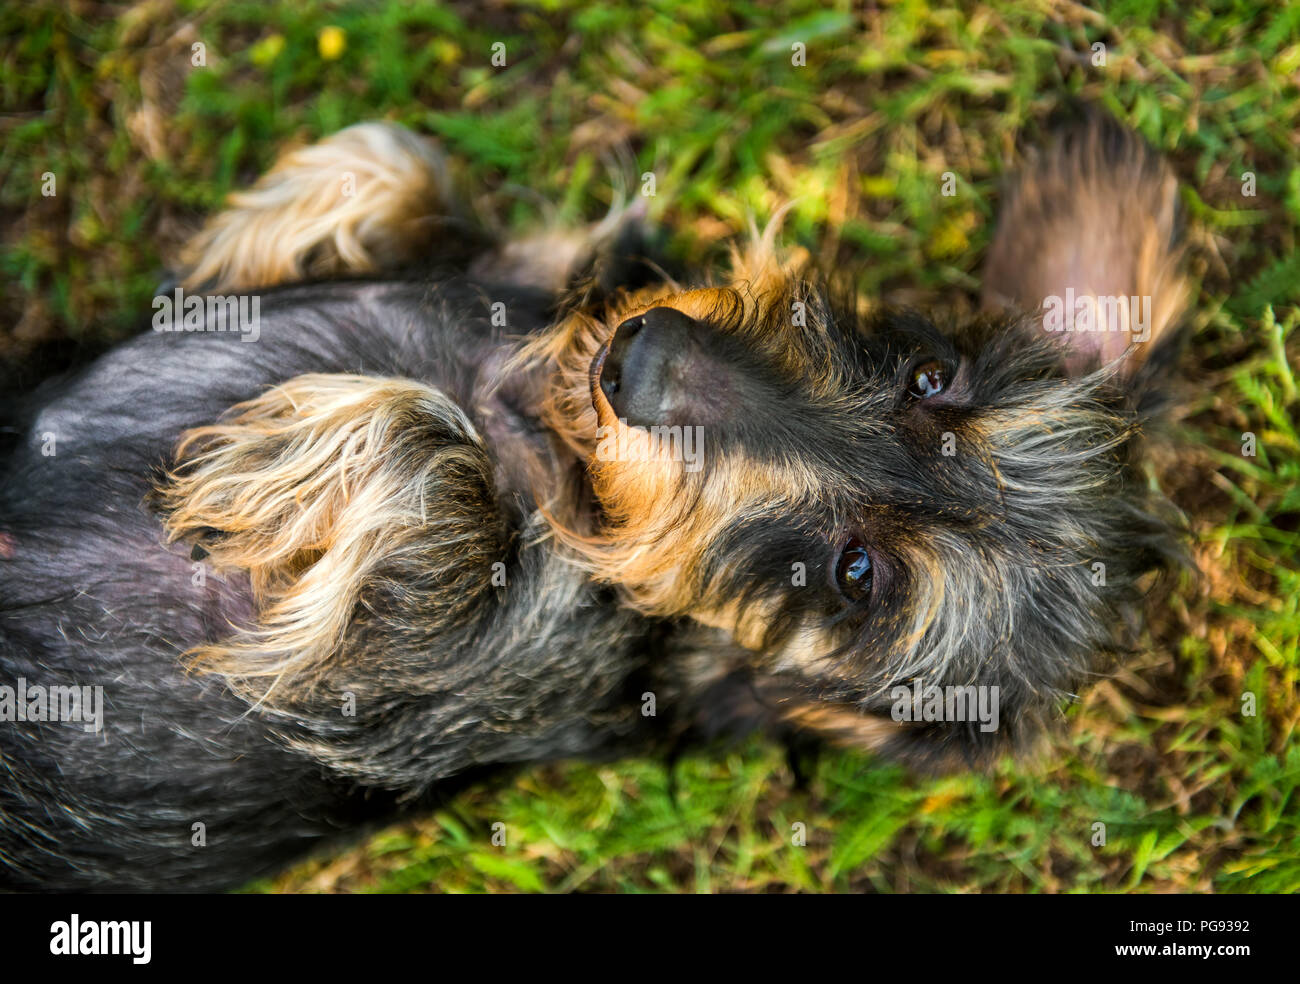 Lustige dackel Hund hat einen Sonnenstich. Hund und Milben Insekten  Stockfotografie - Alamy